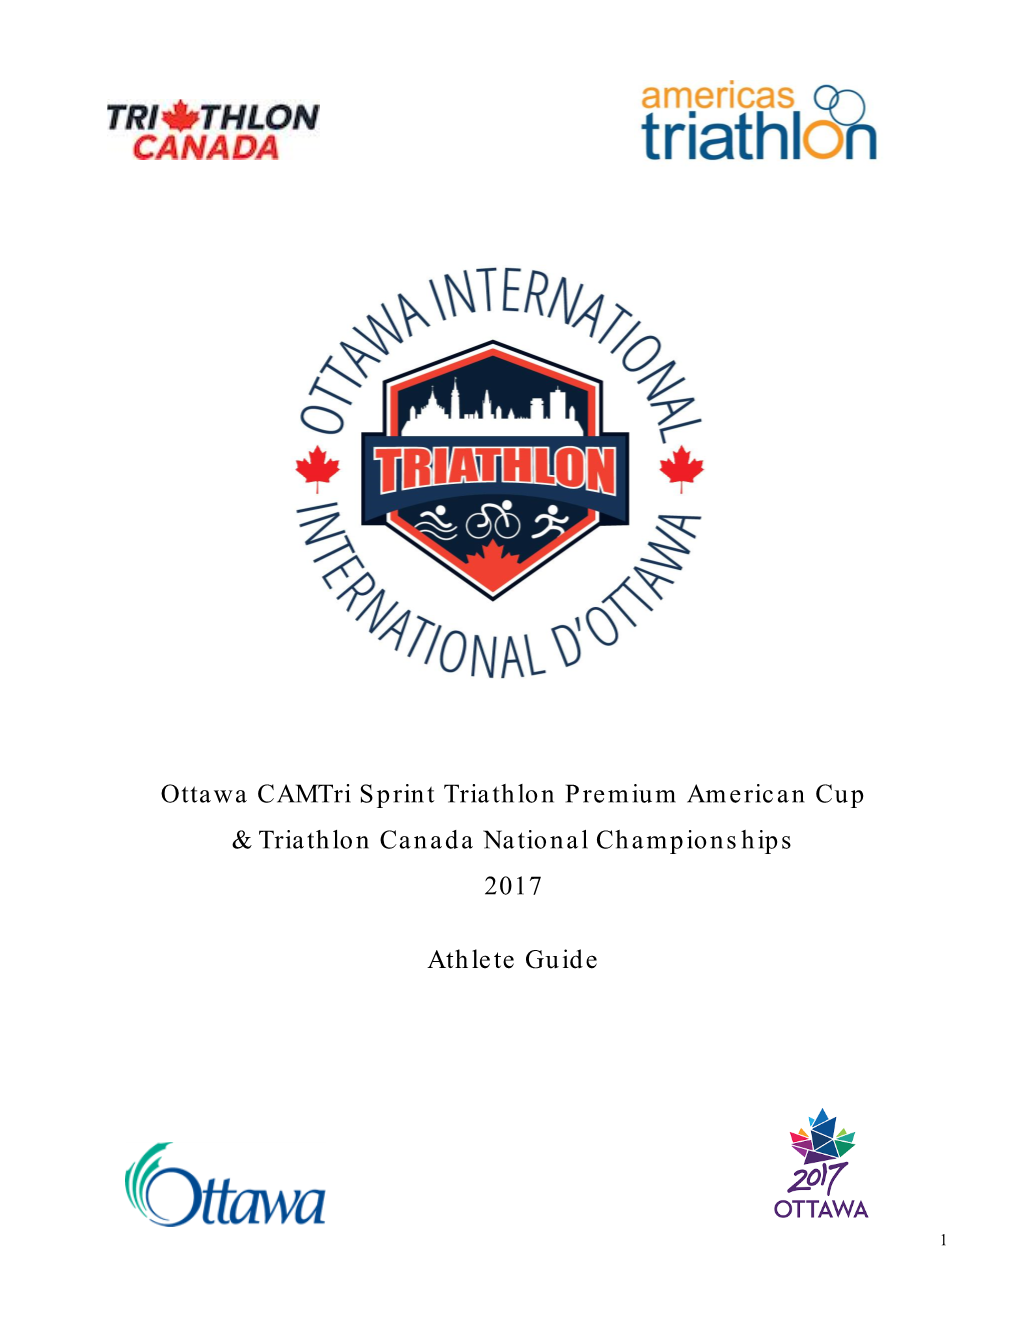 Ottawa Camtri Sprint Triathlon Premium American Cup & Triathlon